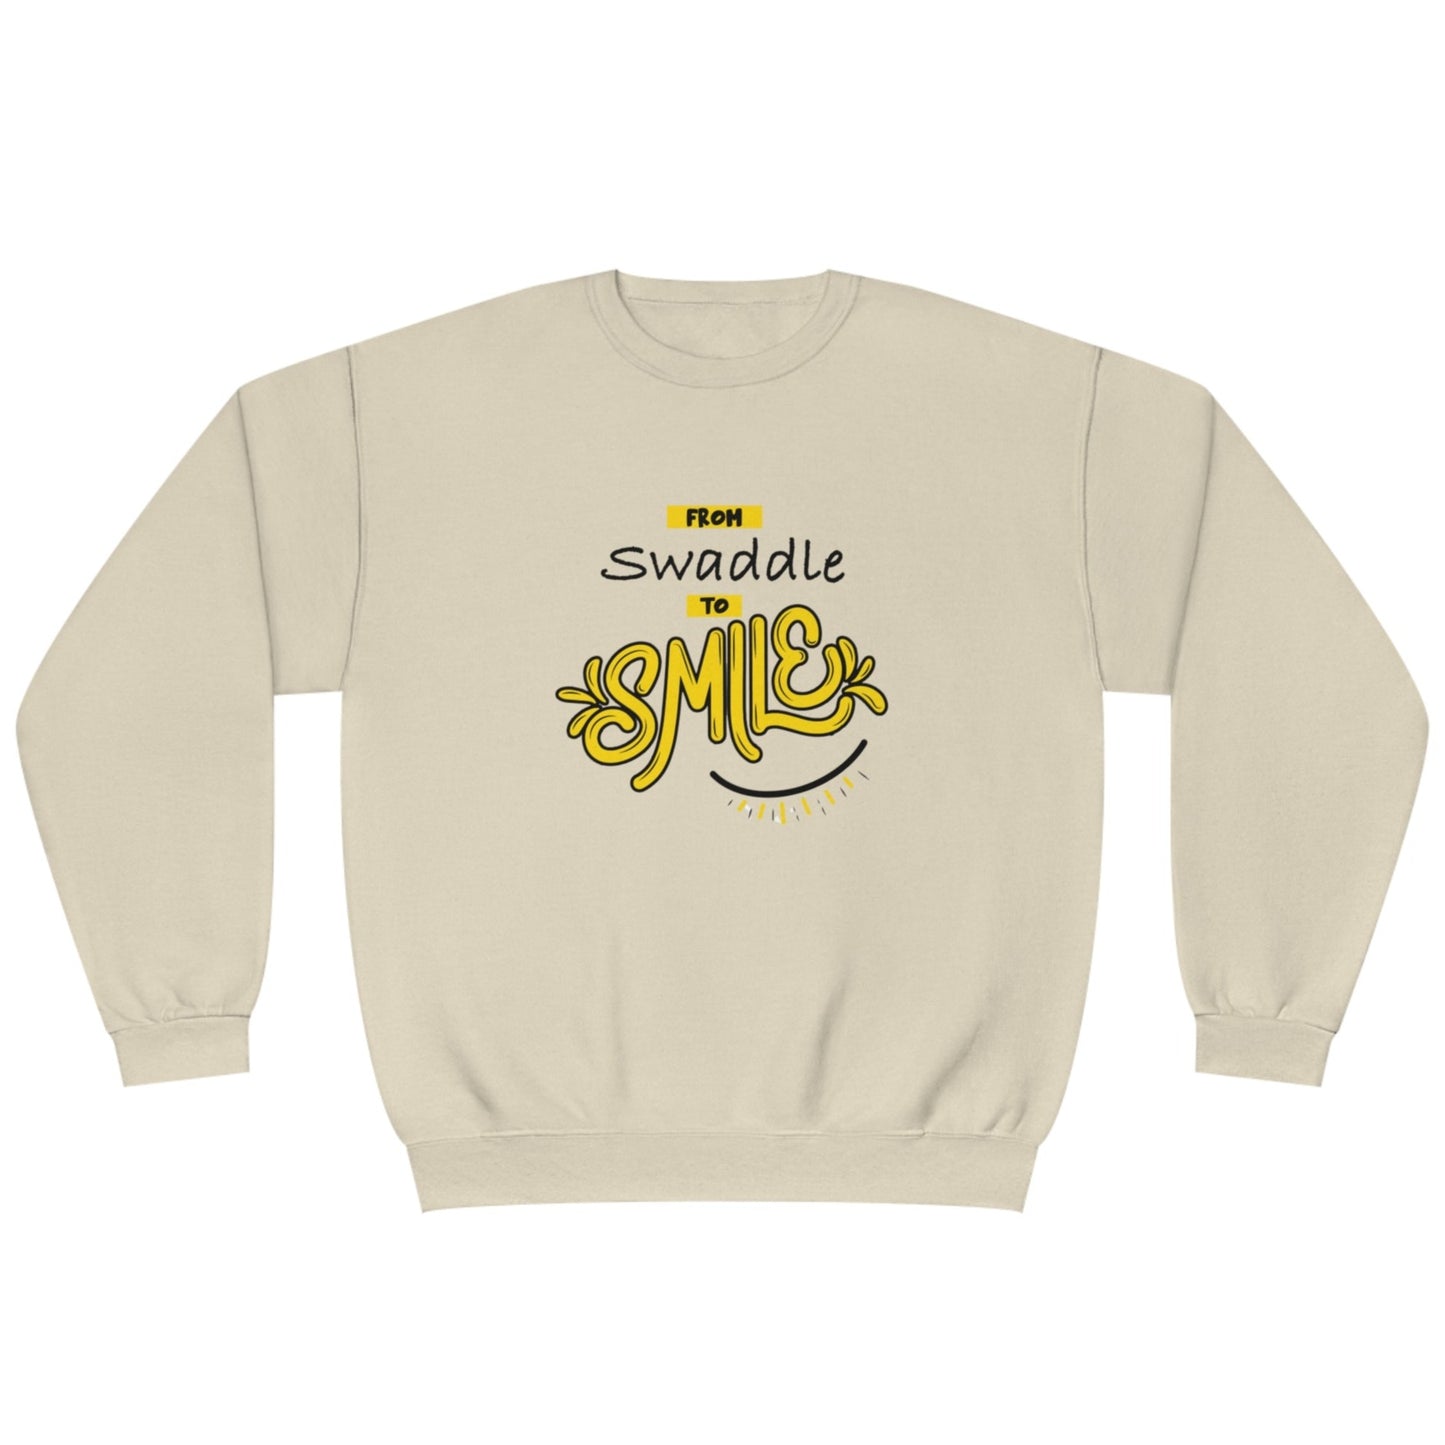 NCS - Swaddle Crewneck Sweatshirt